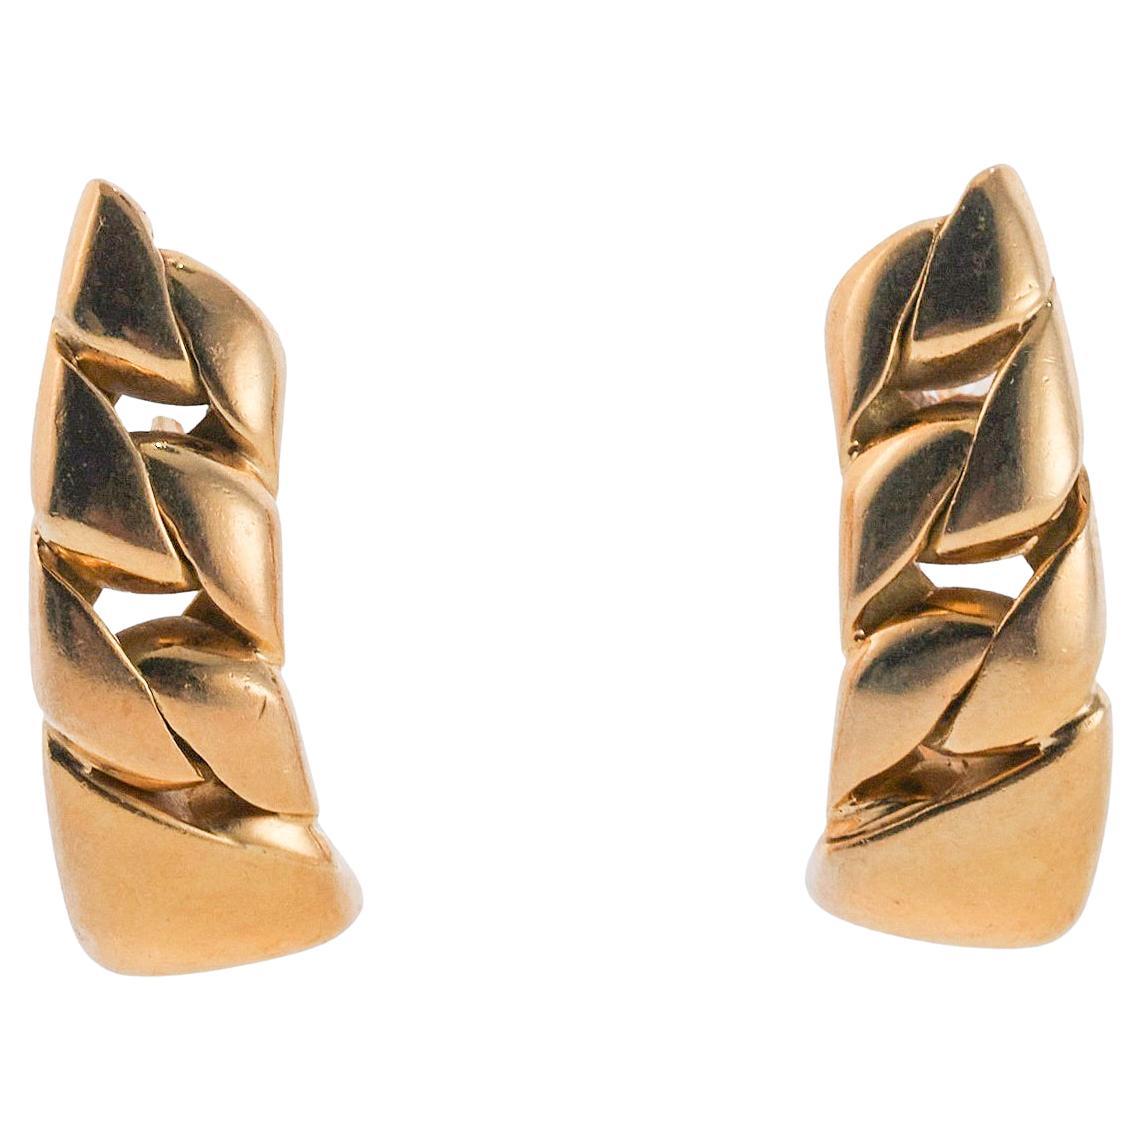 Chanel Earrings for Sale: Online Auctions  Buy Diamond, Gold & Silver Chanel  Earrings